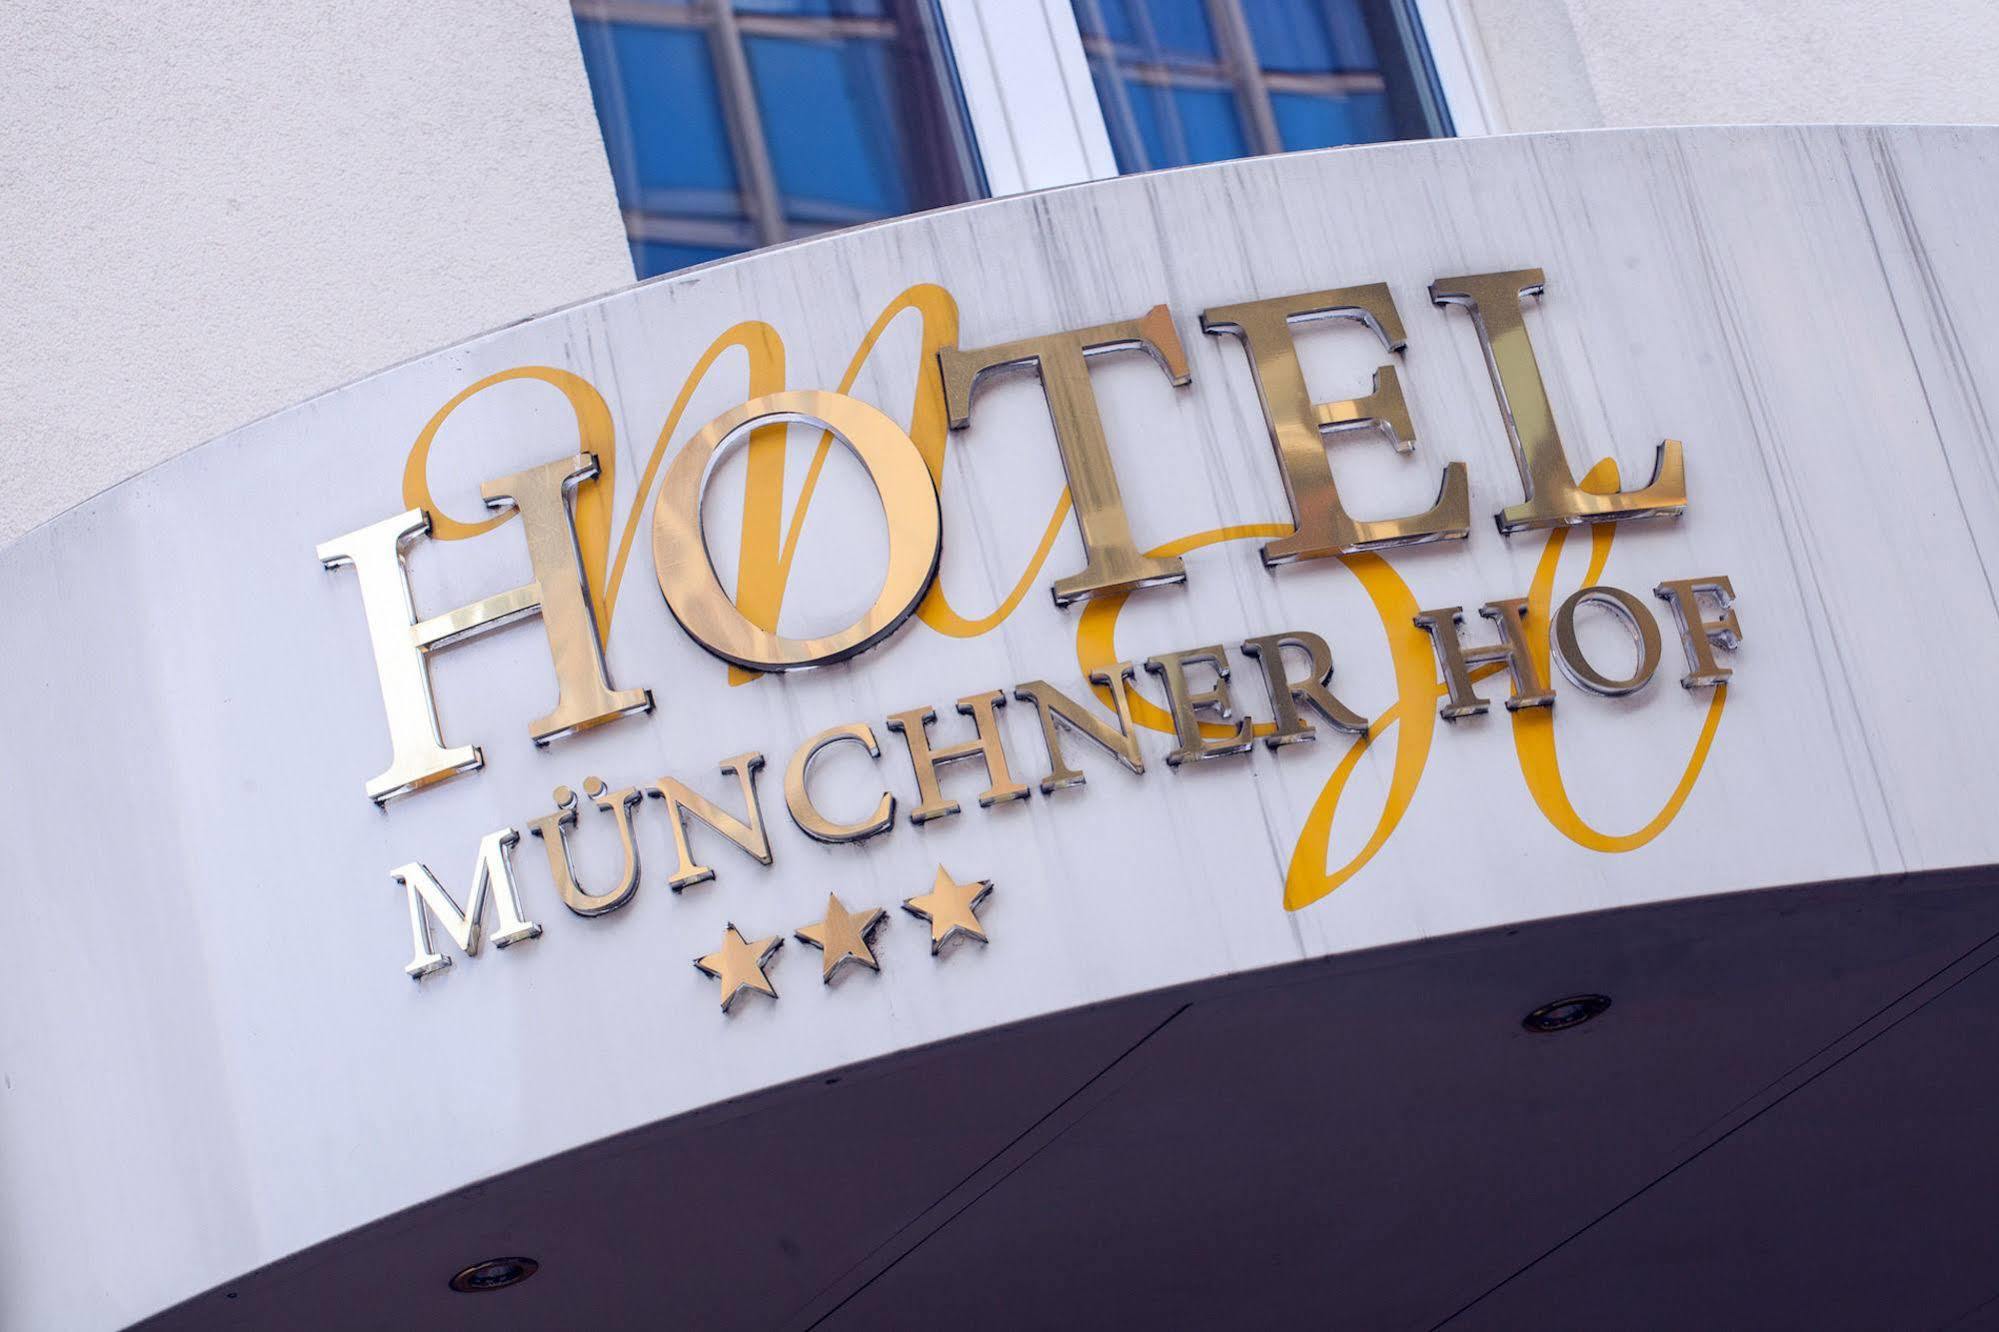 Hotel Münchner Hof Frankfurt am Main Exterior foto